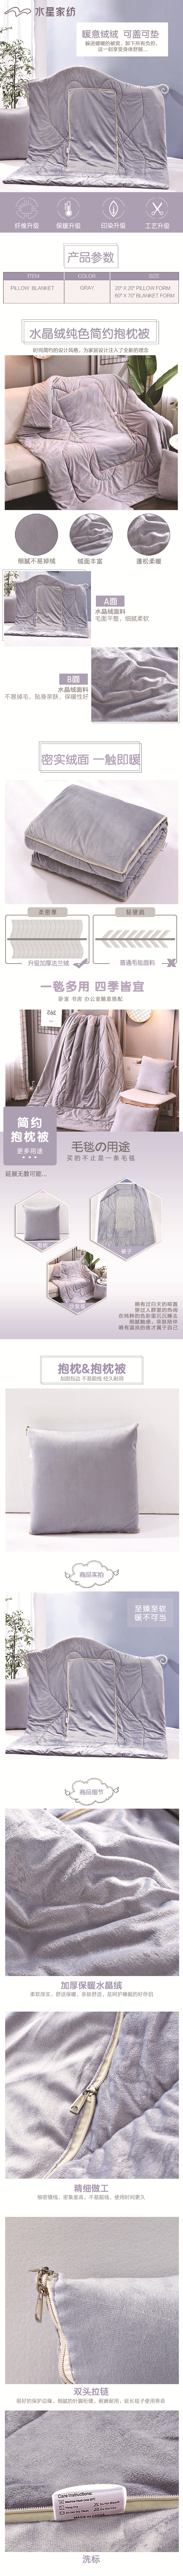 100% Cotton 2-in-1 Velvet Pillow Blanket 20" x 20" (Pillow form)/ 60" x 70" (Blanket form) - Gray